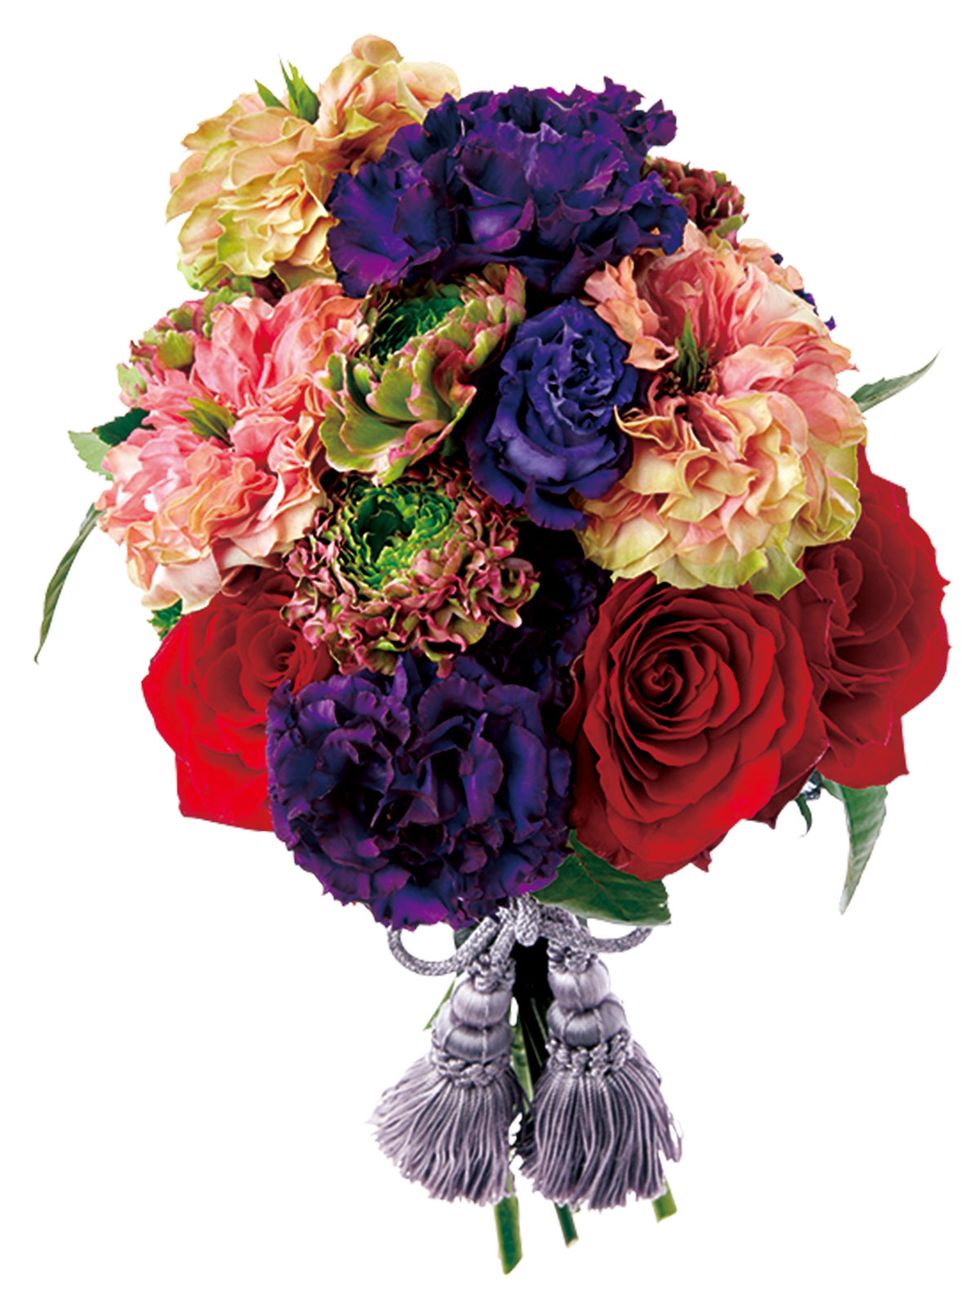 Flower, Bouquet, Cut flowers, Plant, Flower Arranging, Floristry, Rose, Purple, Floral design, Flowering plant, 